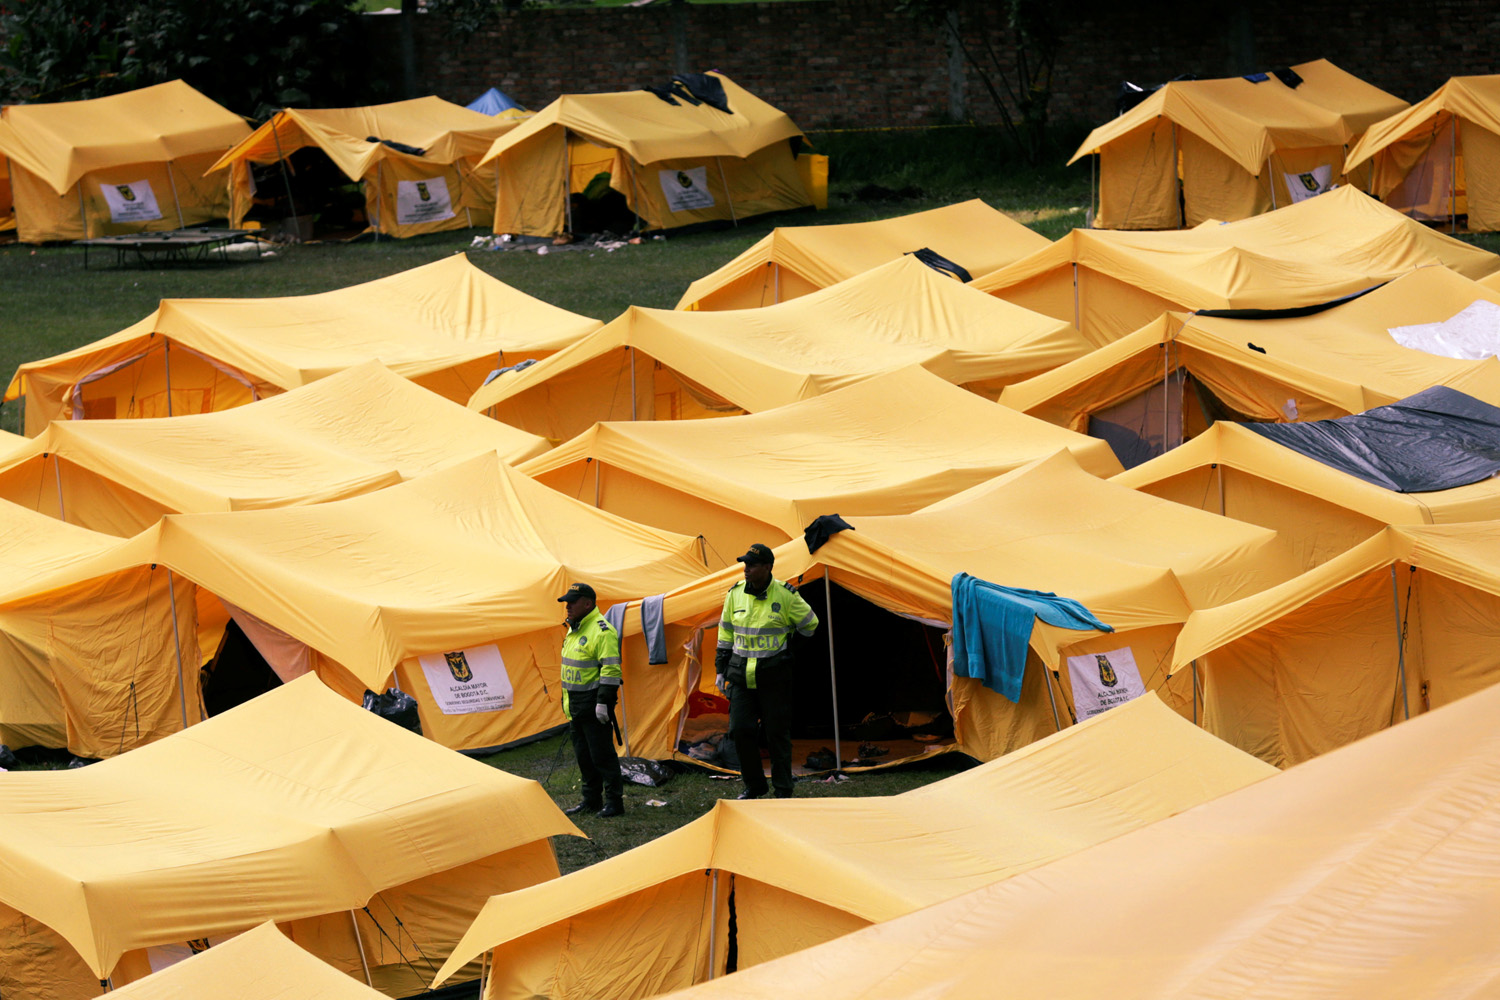 Asustados y con incertidumbre, así viven los venezolanos en el campamento en Bogotá